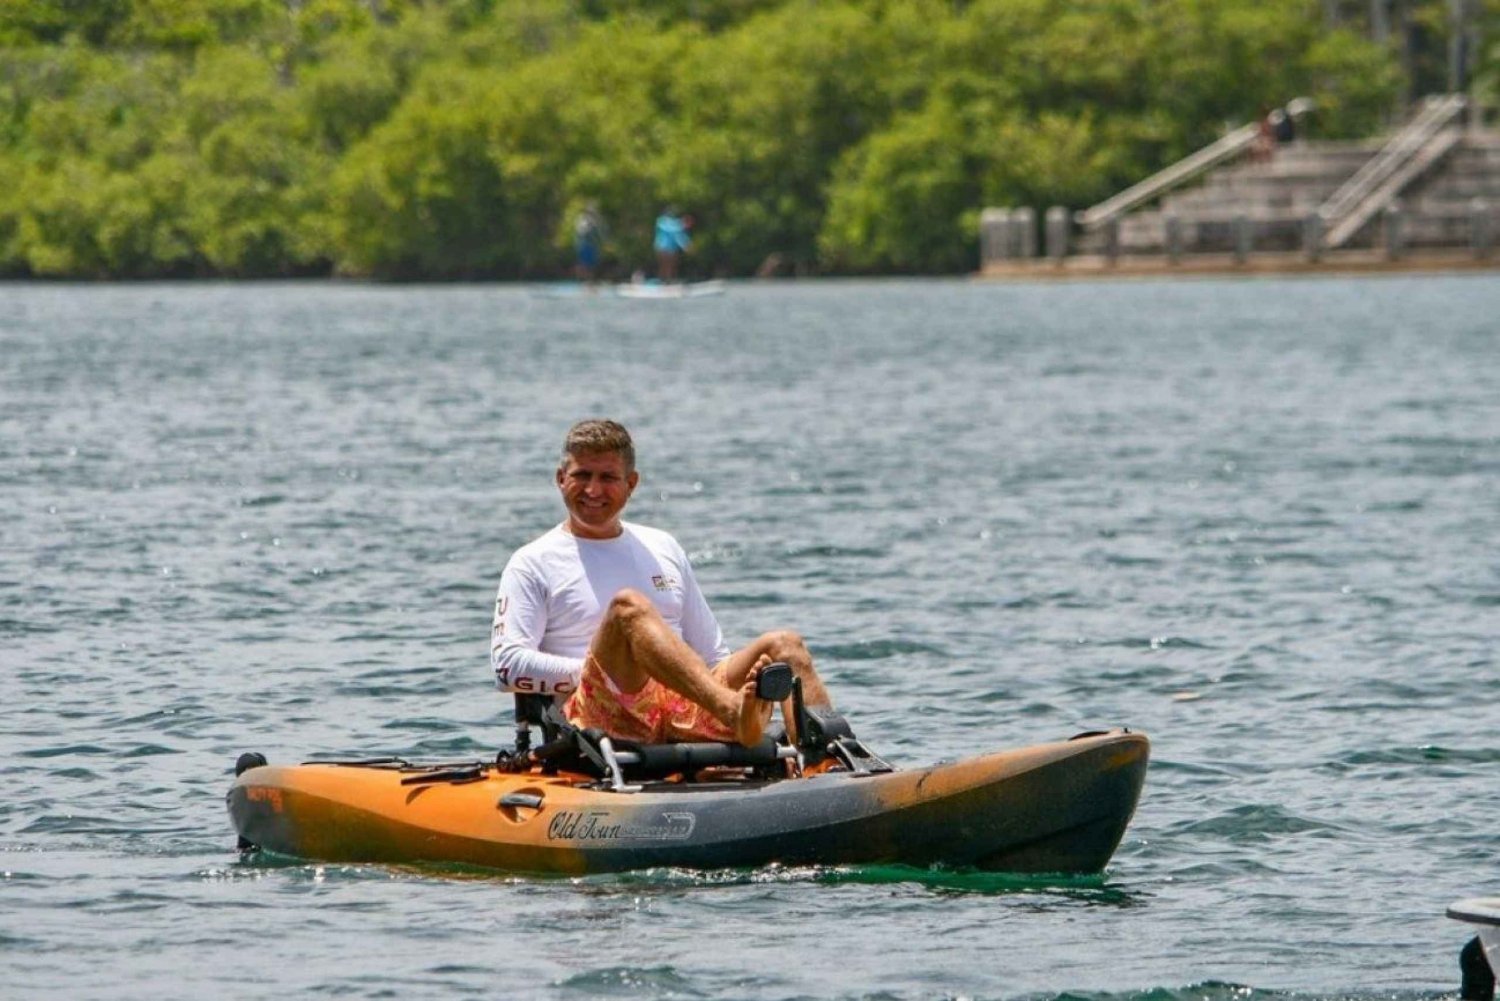 San Juan: Experiencia en Kayak de Bicicleta en la Laguna del Condado